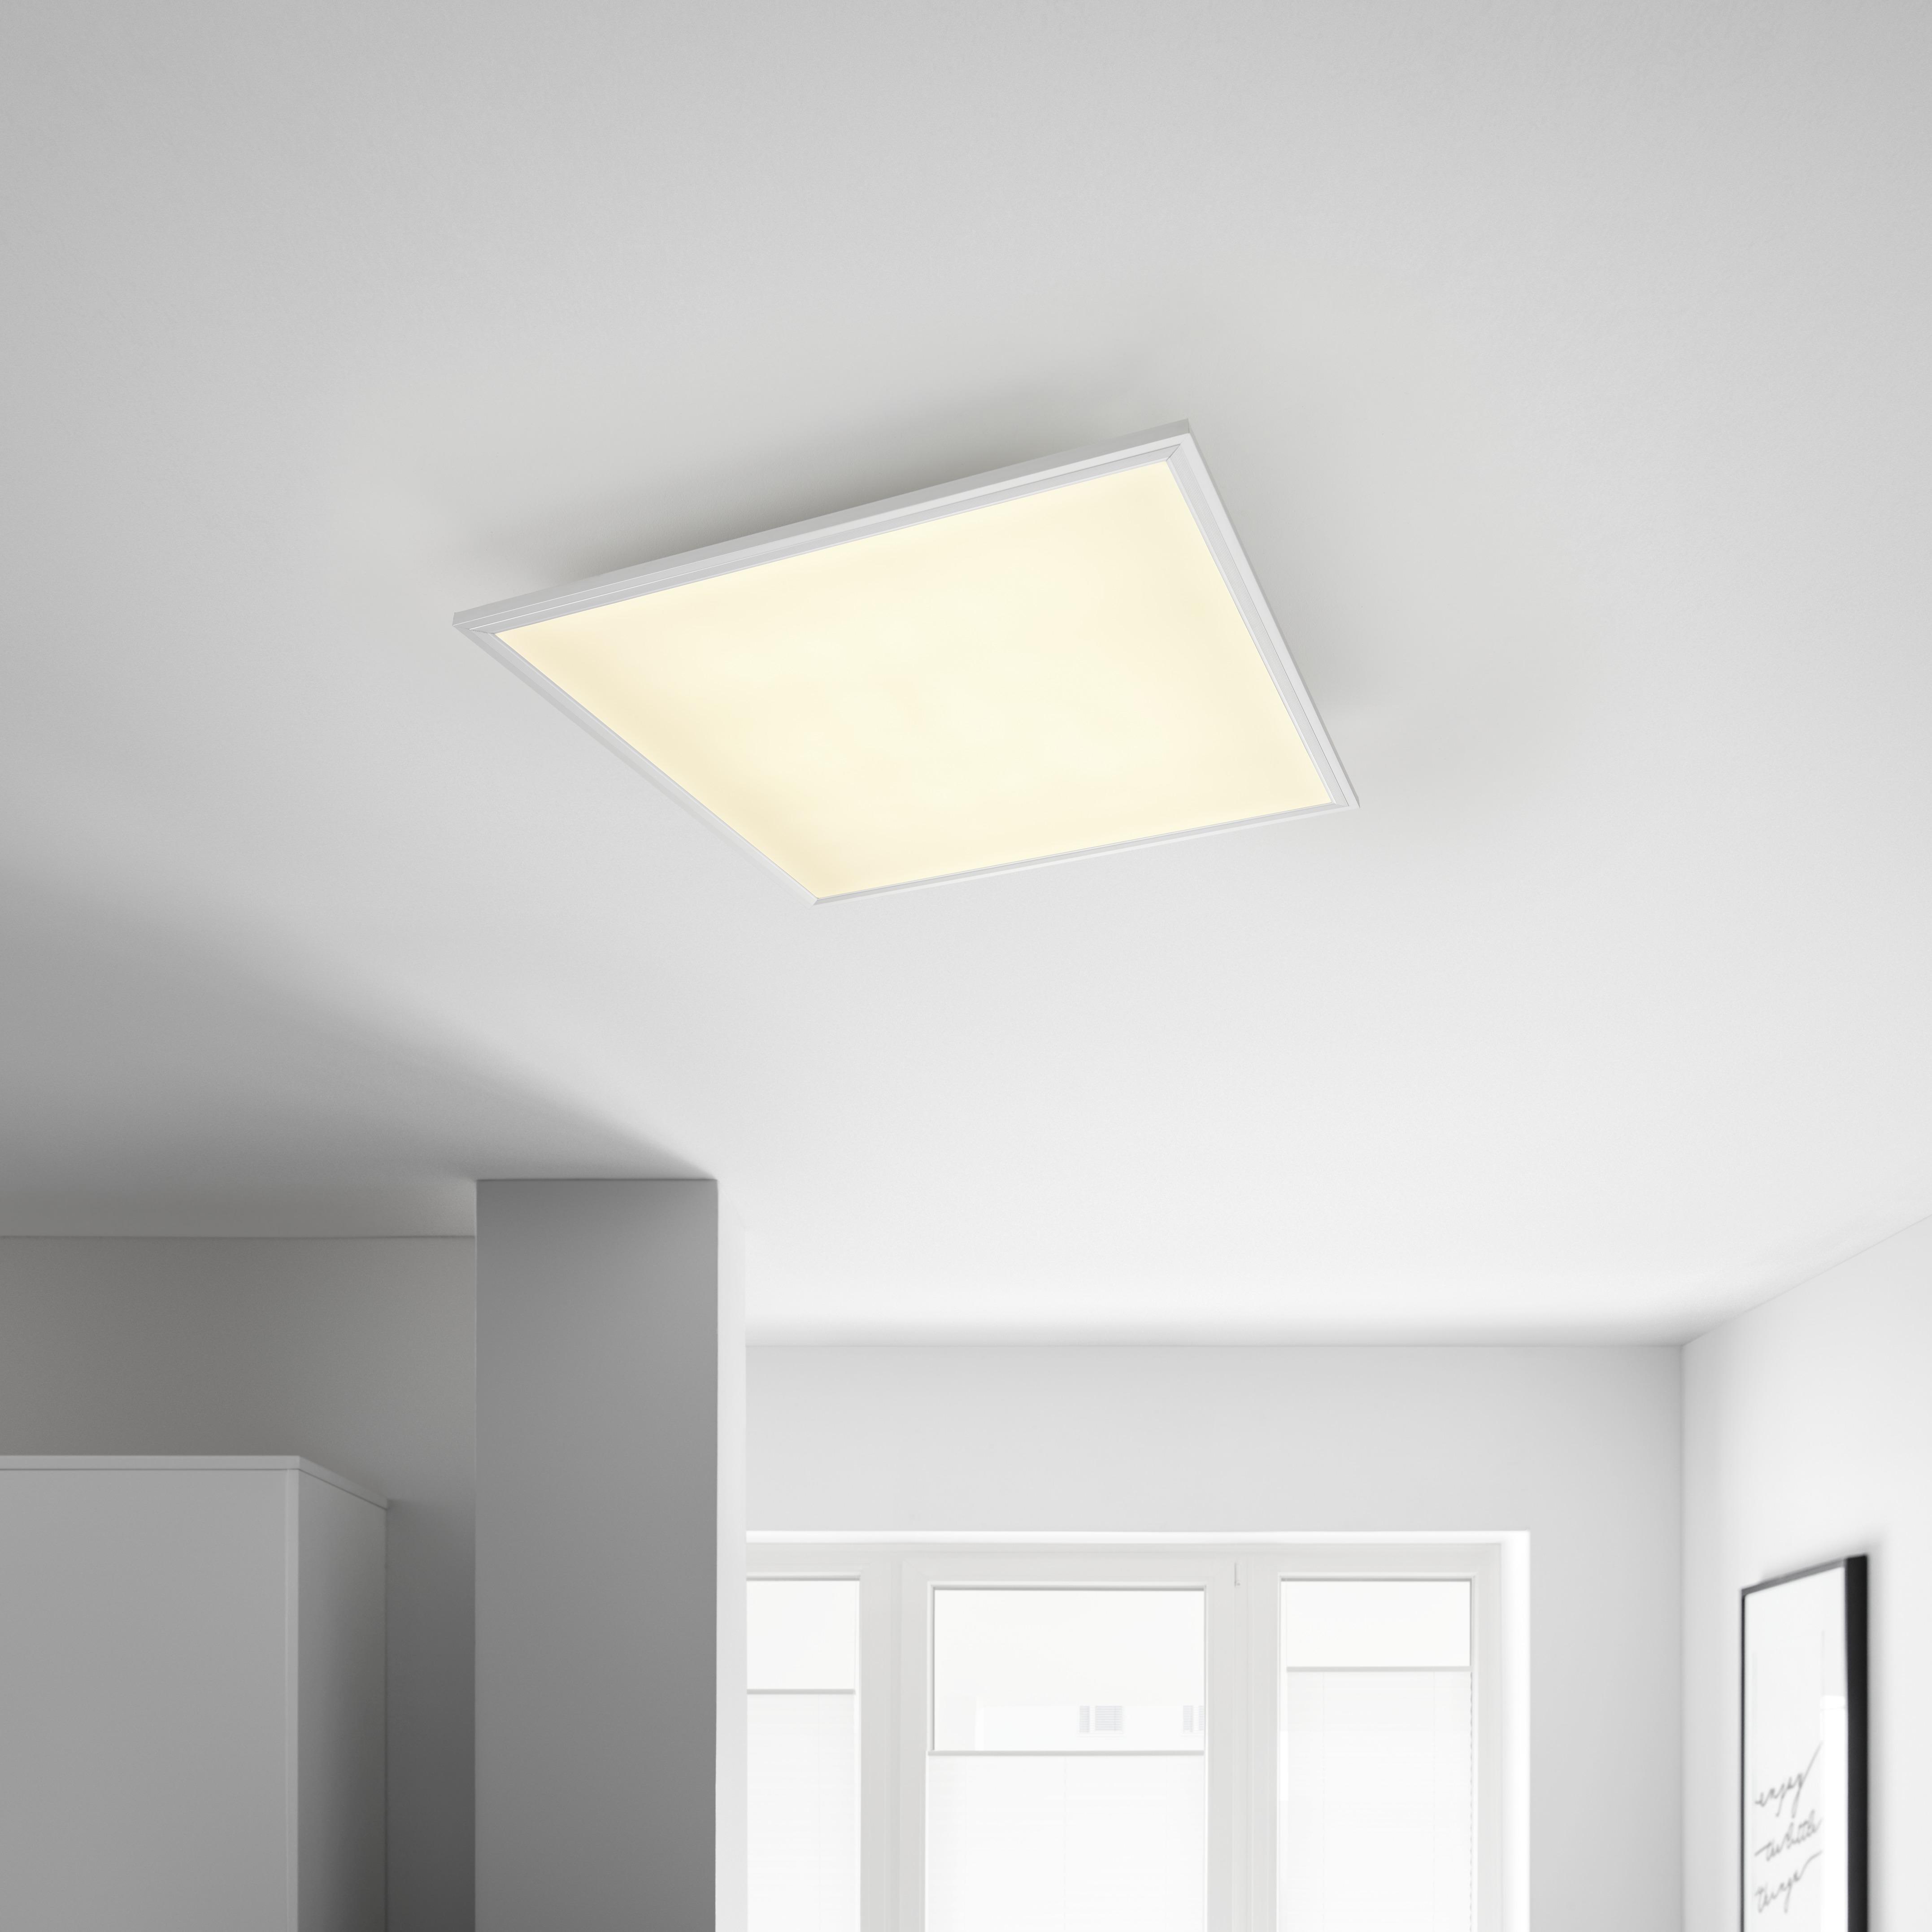 LED-Deckenleuchte Cornelius max. 40 Watt - Weiß, MODERN, Kunststoff/Metall (59,5/59,5/8cm) - Premium Living